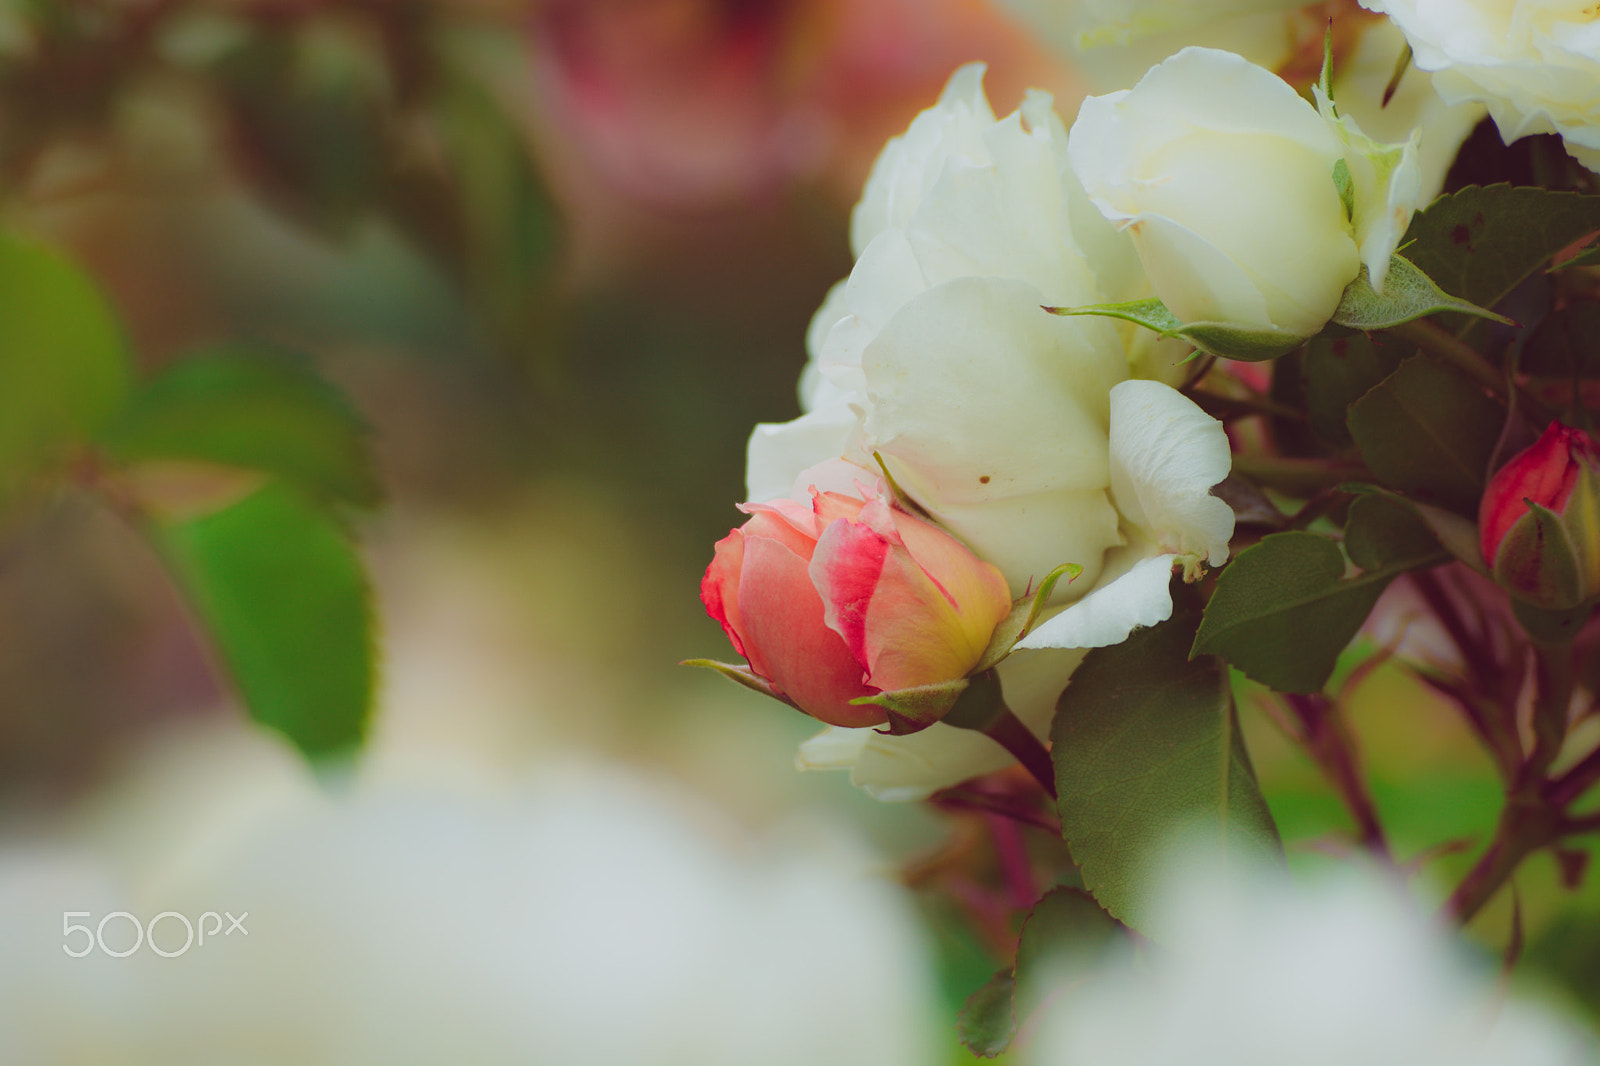 Nikon D7100 sample photo. The rose garden photography